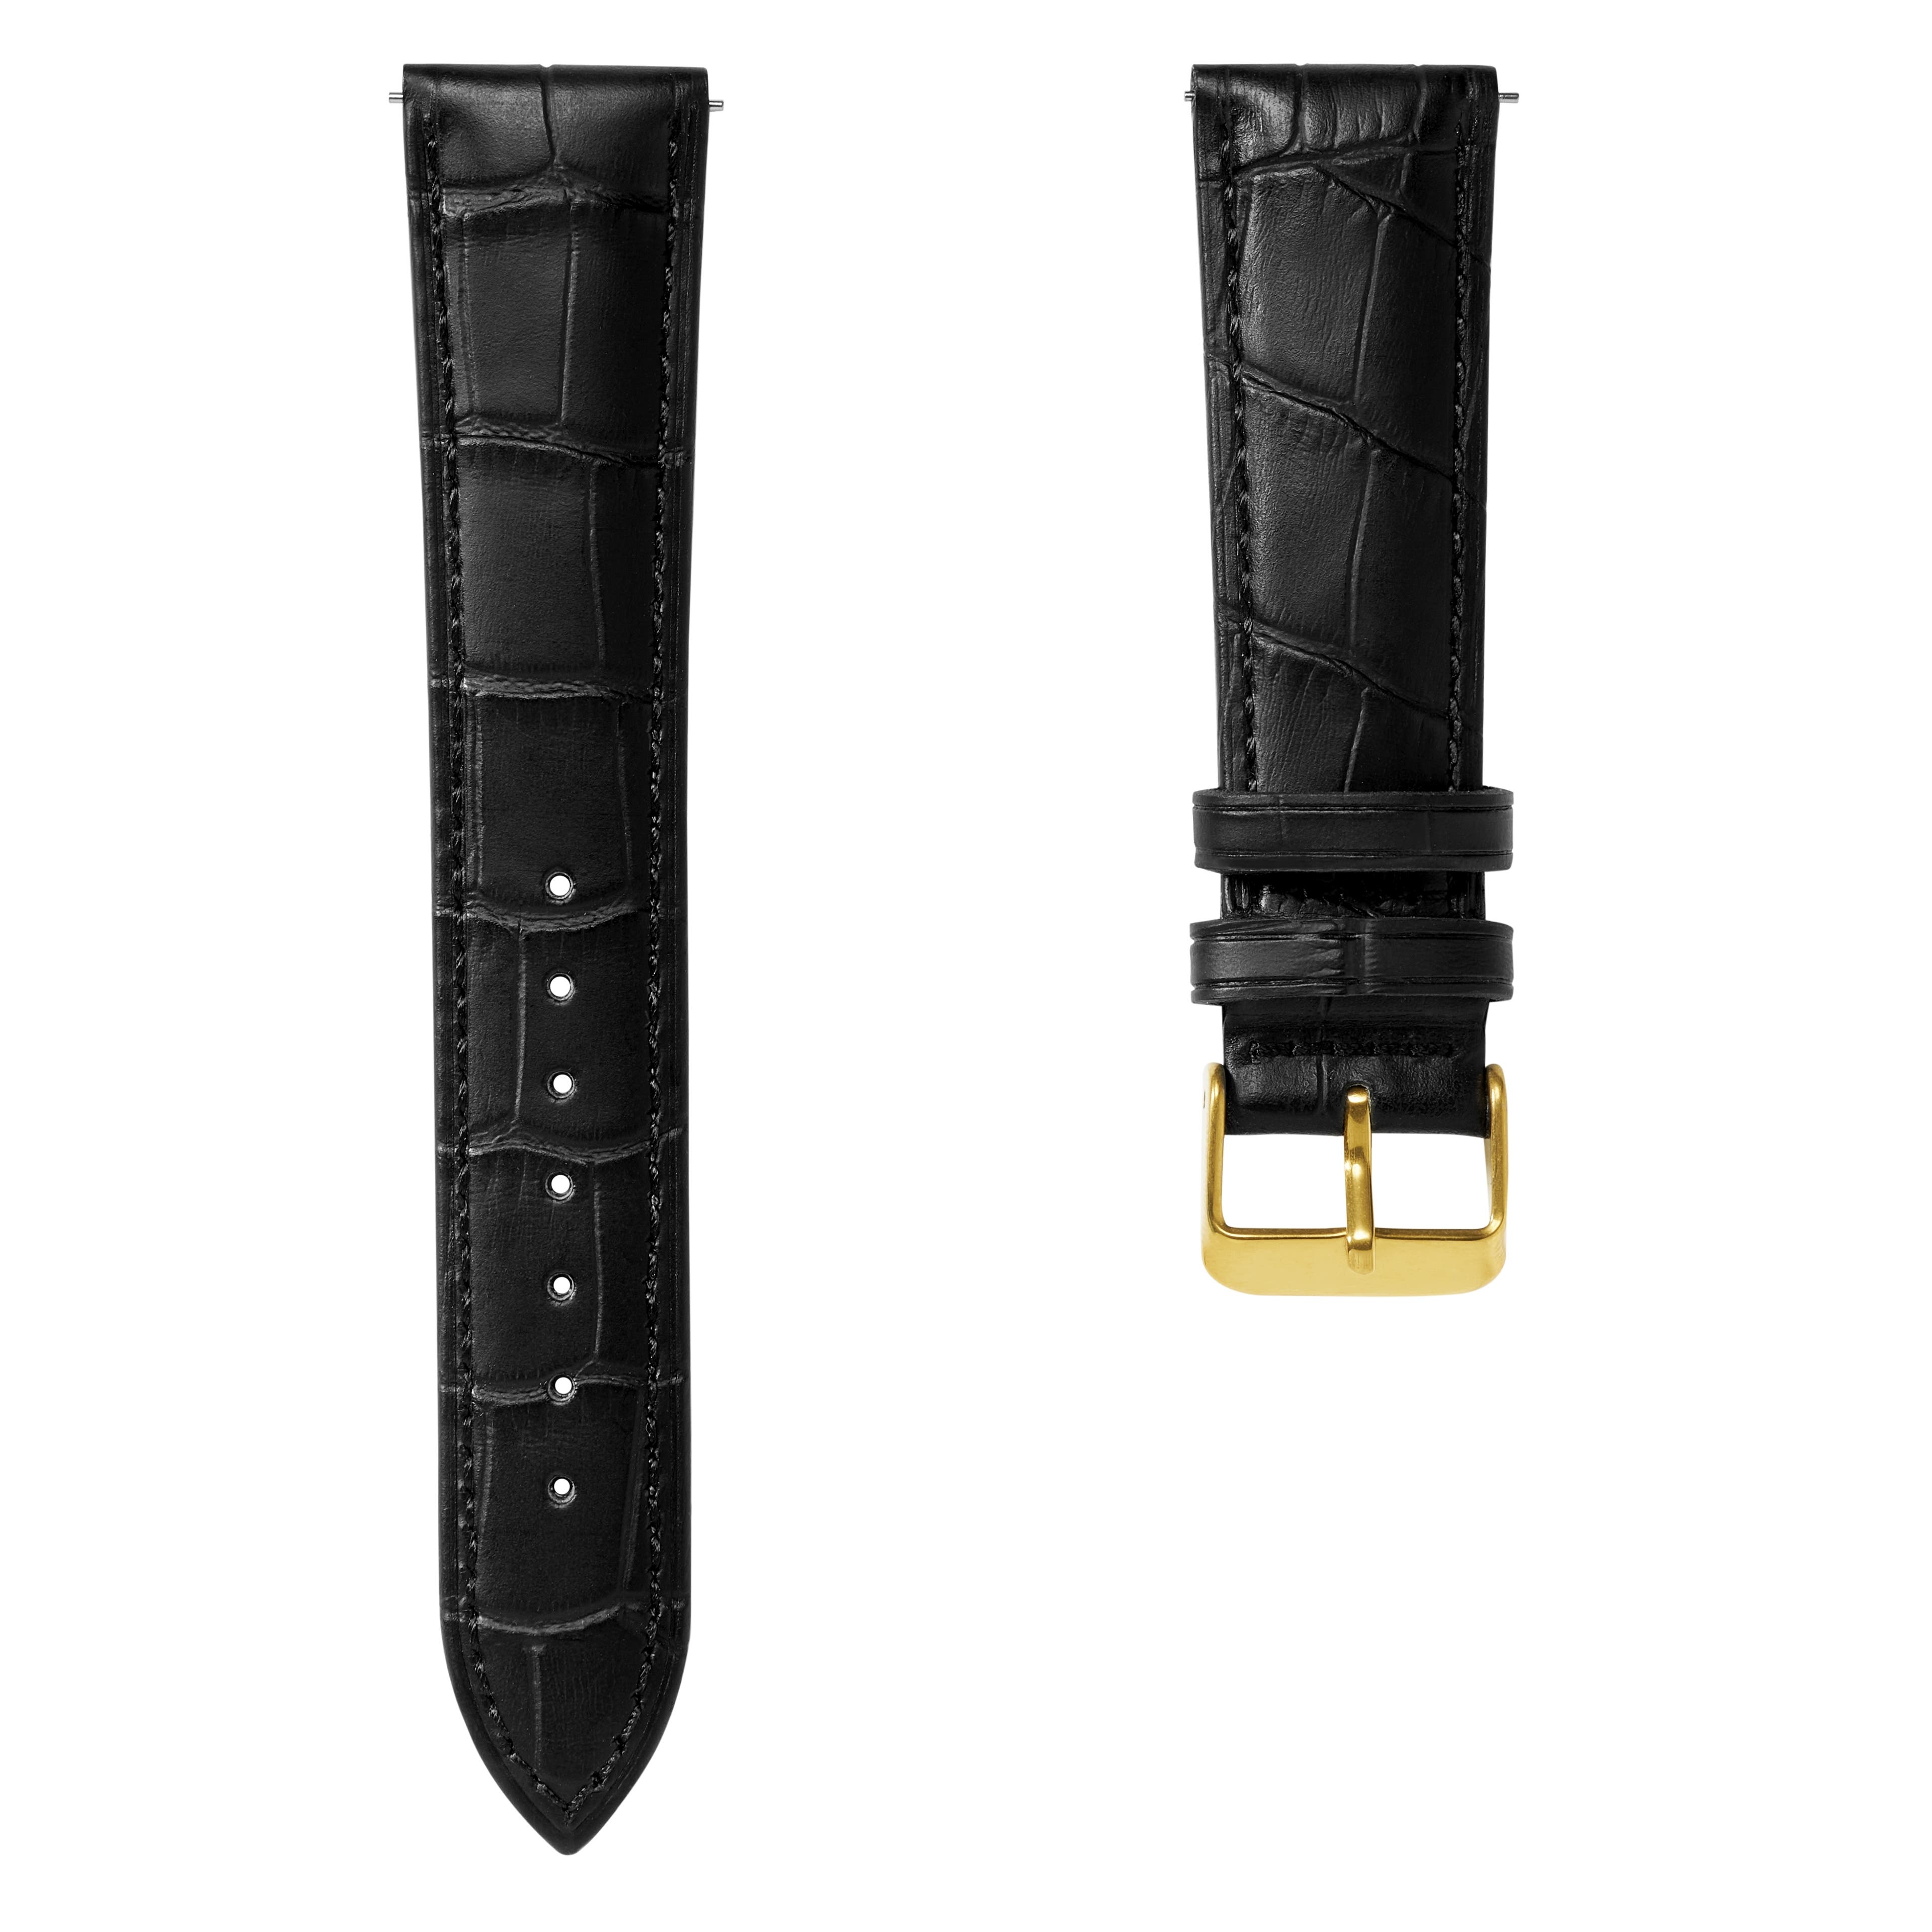 20 mm horlogeband van zwart leer met krokodillenmotief en goudkleurige gesp – Snelsluiting